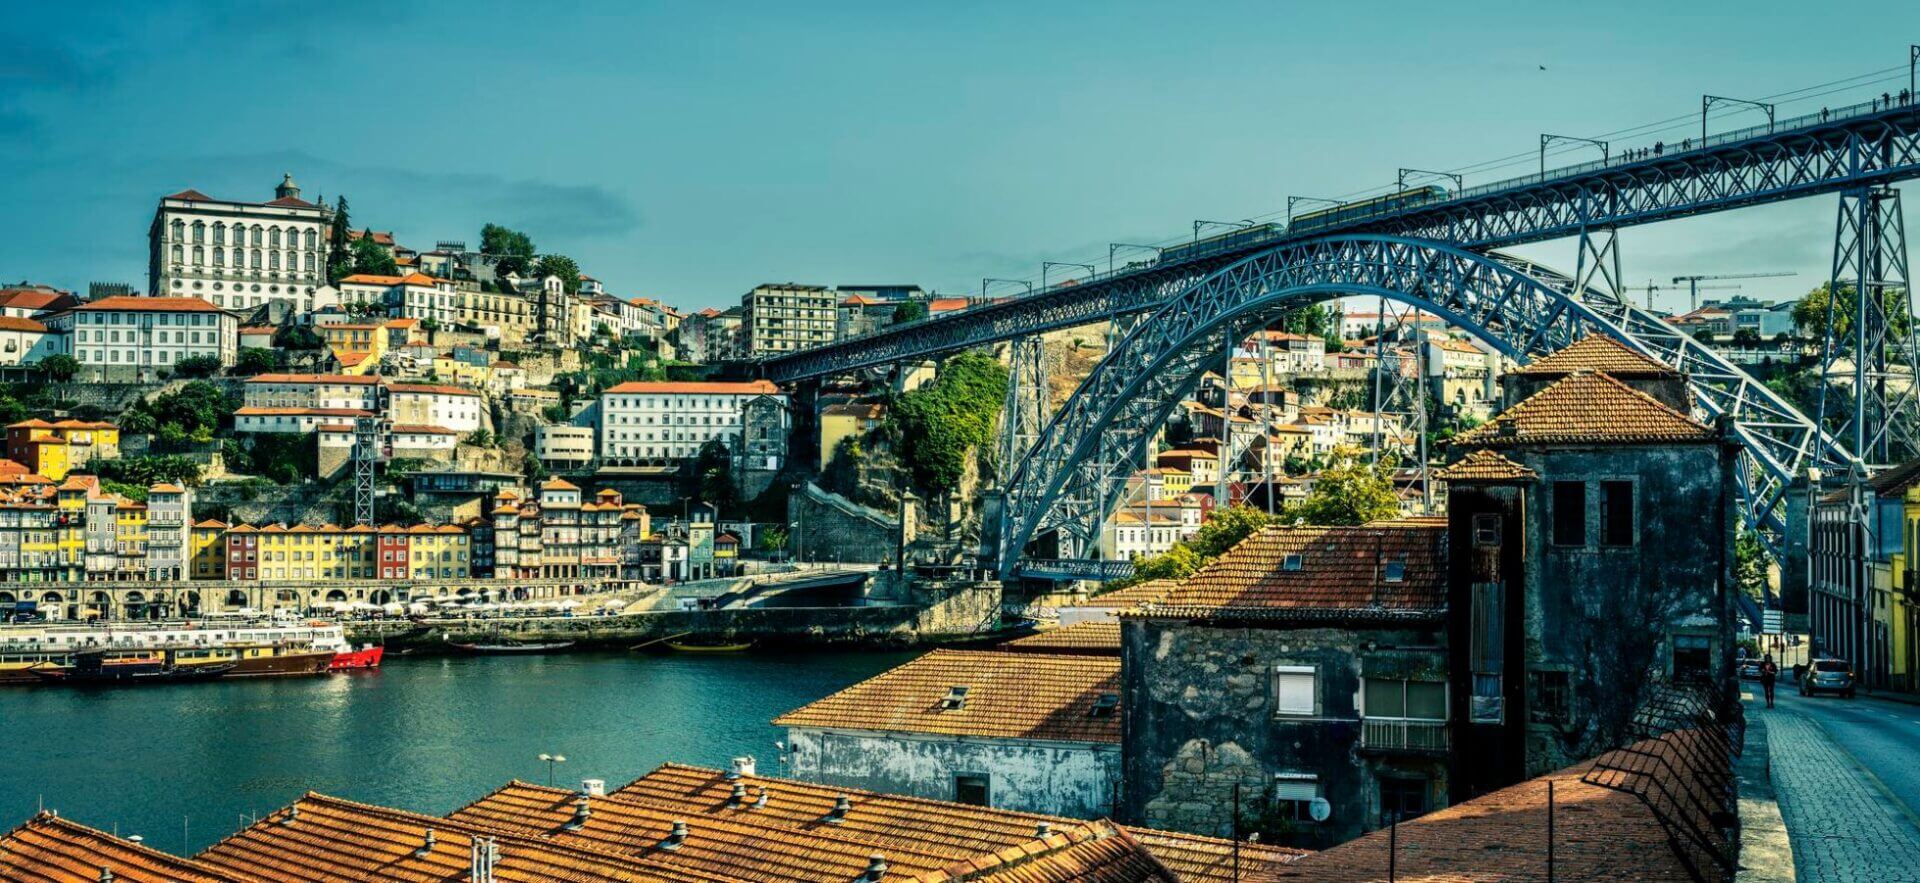 vat portugalia: widok na porto